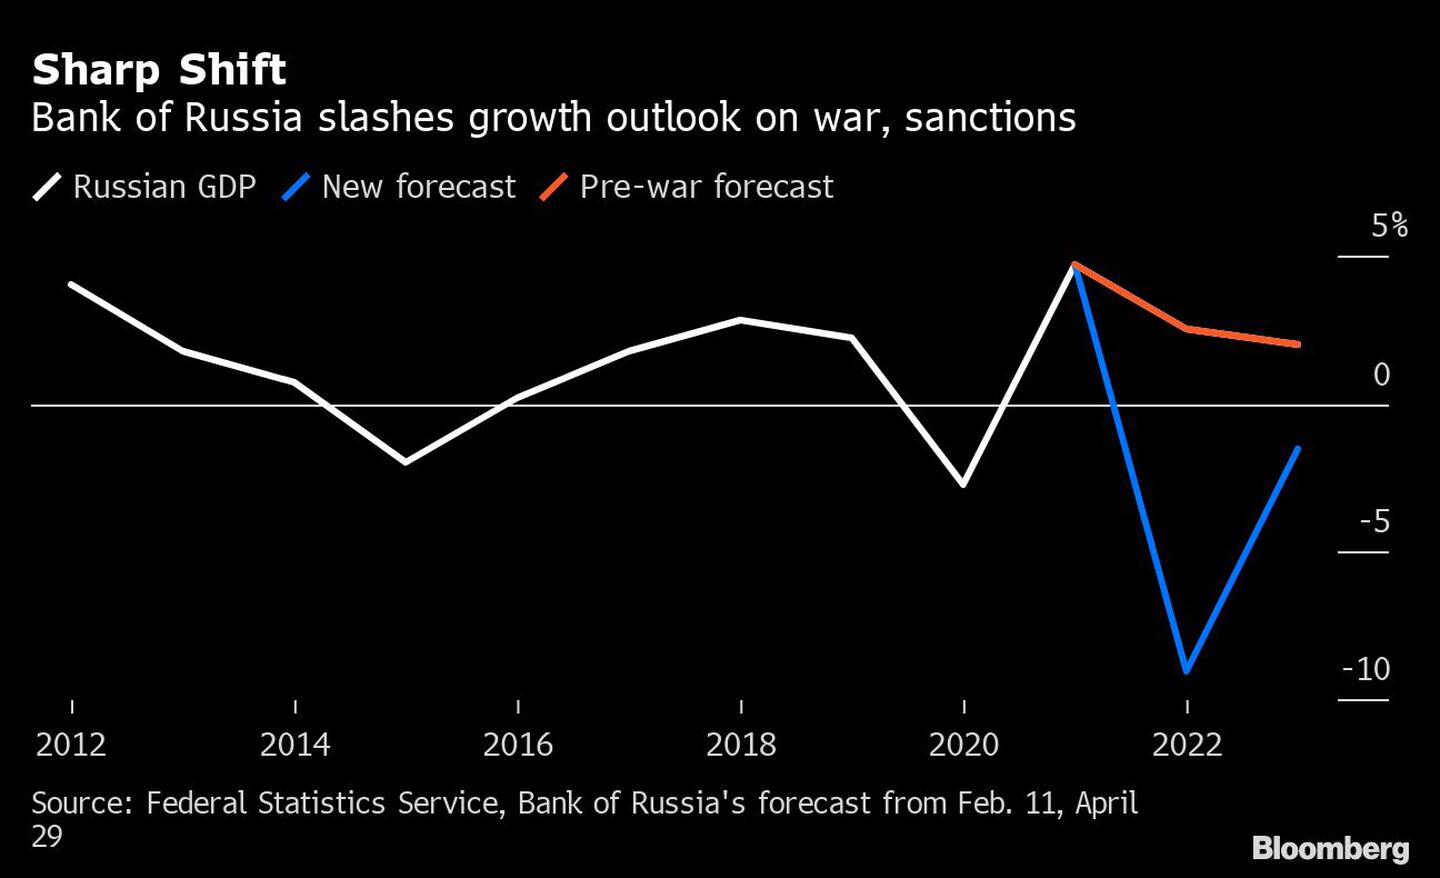 El Banco de Rusia recorta sus perspectivas de crecimiento por la guerra y las sancionesdfd